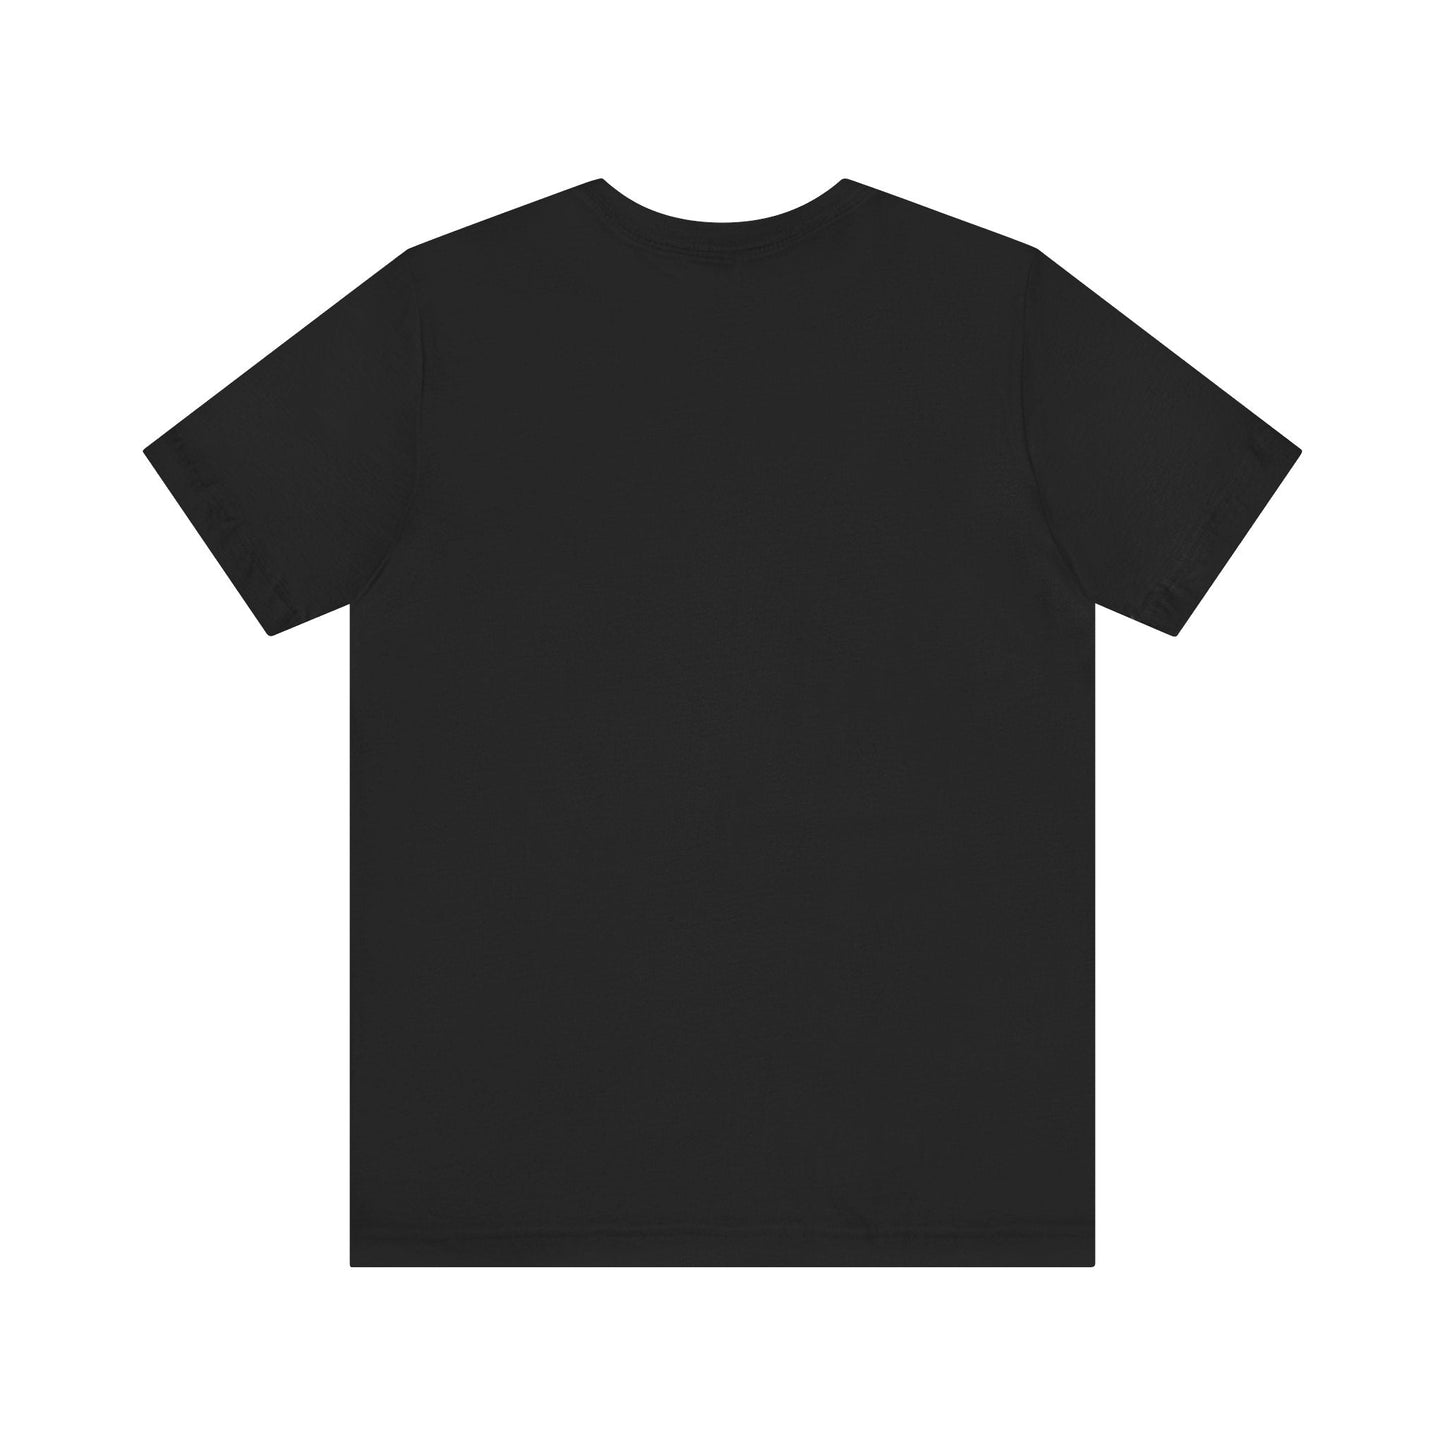 LOWER HELL - Black Mass Apparel - T - Shirt